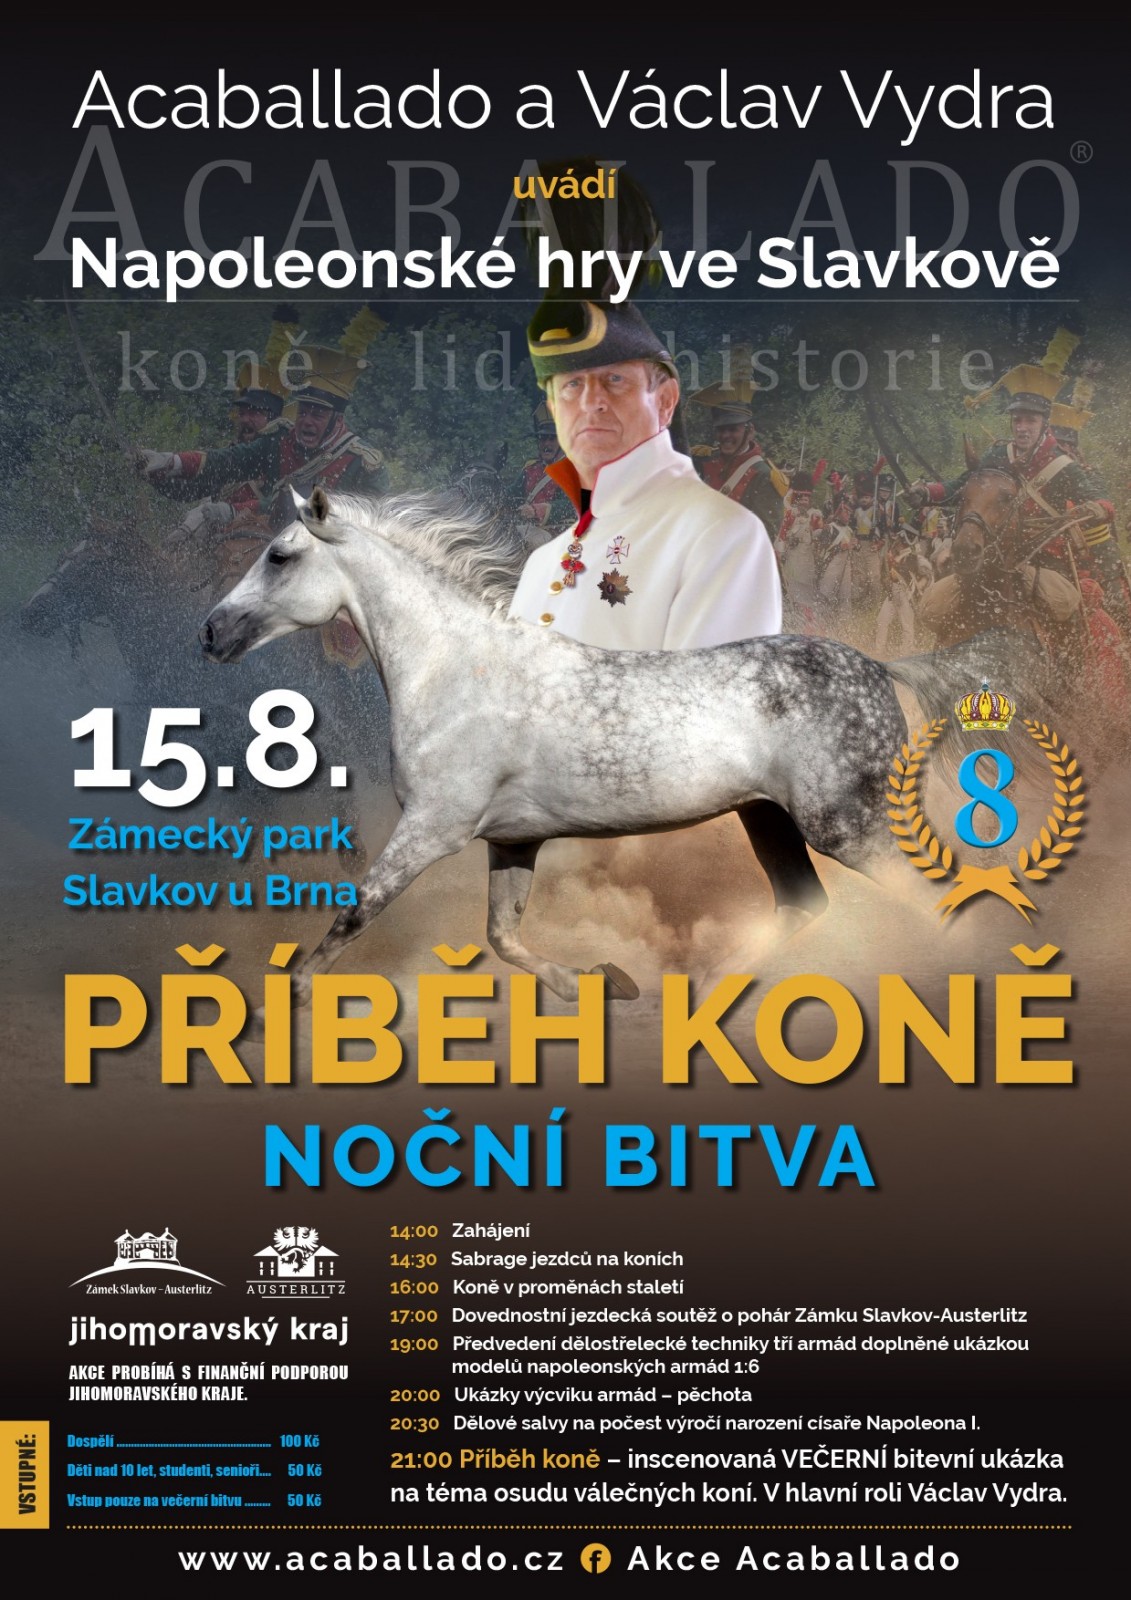 NOV - - - Napoleonsk hry 2020 Slavkov u Brna - 8. ronk